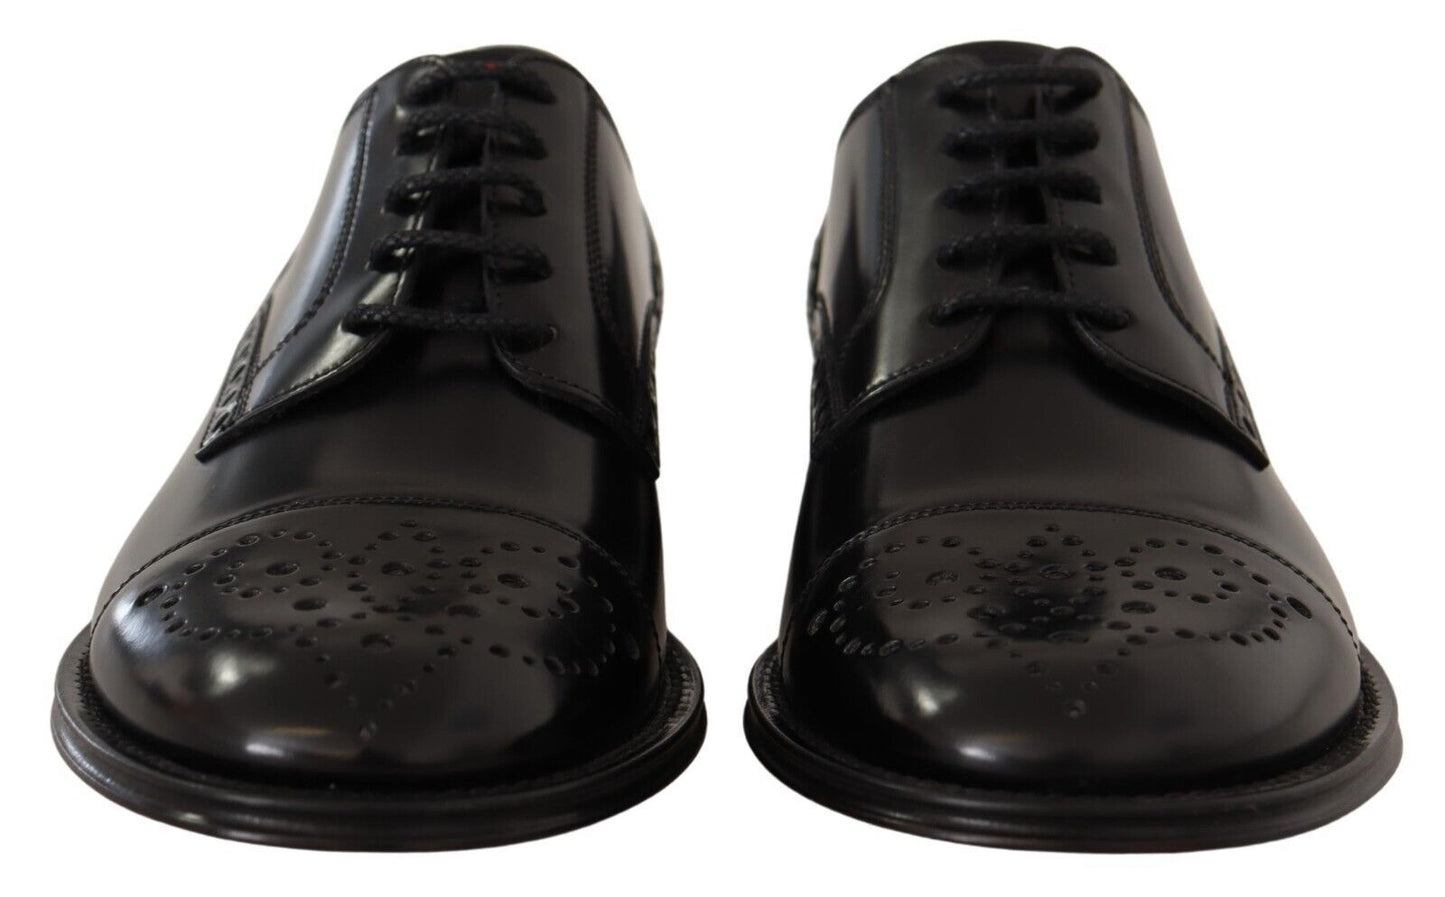 Elegant Wingtip Oxford Formal Shoes